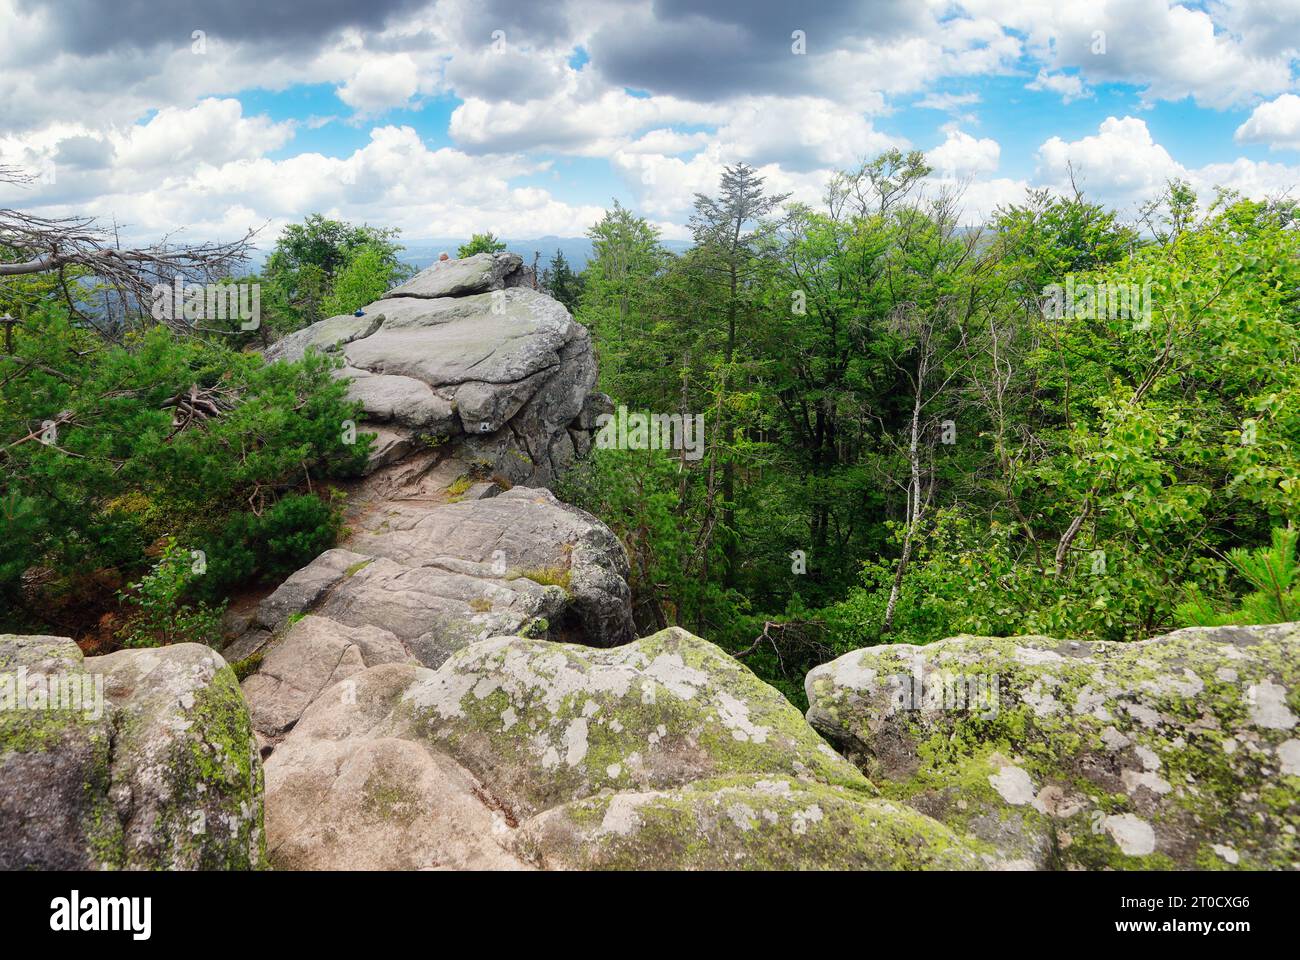 Formation rocheuse de Ctyri palice dans la journée, montagne Zdarske vrchy - Vysocina, république tchèque Banque D'Images